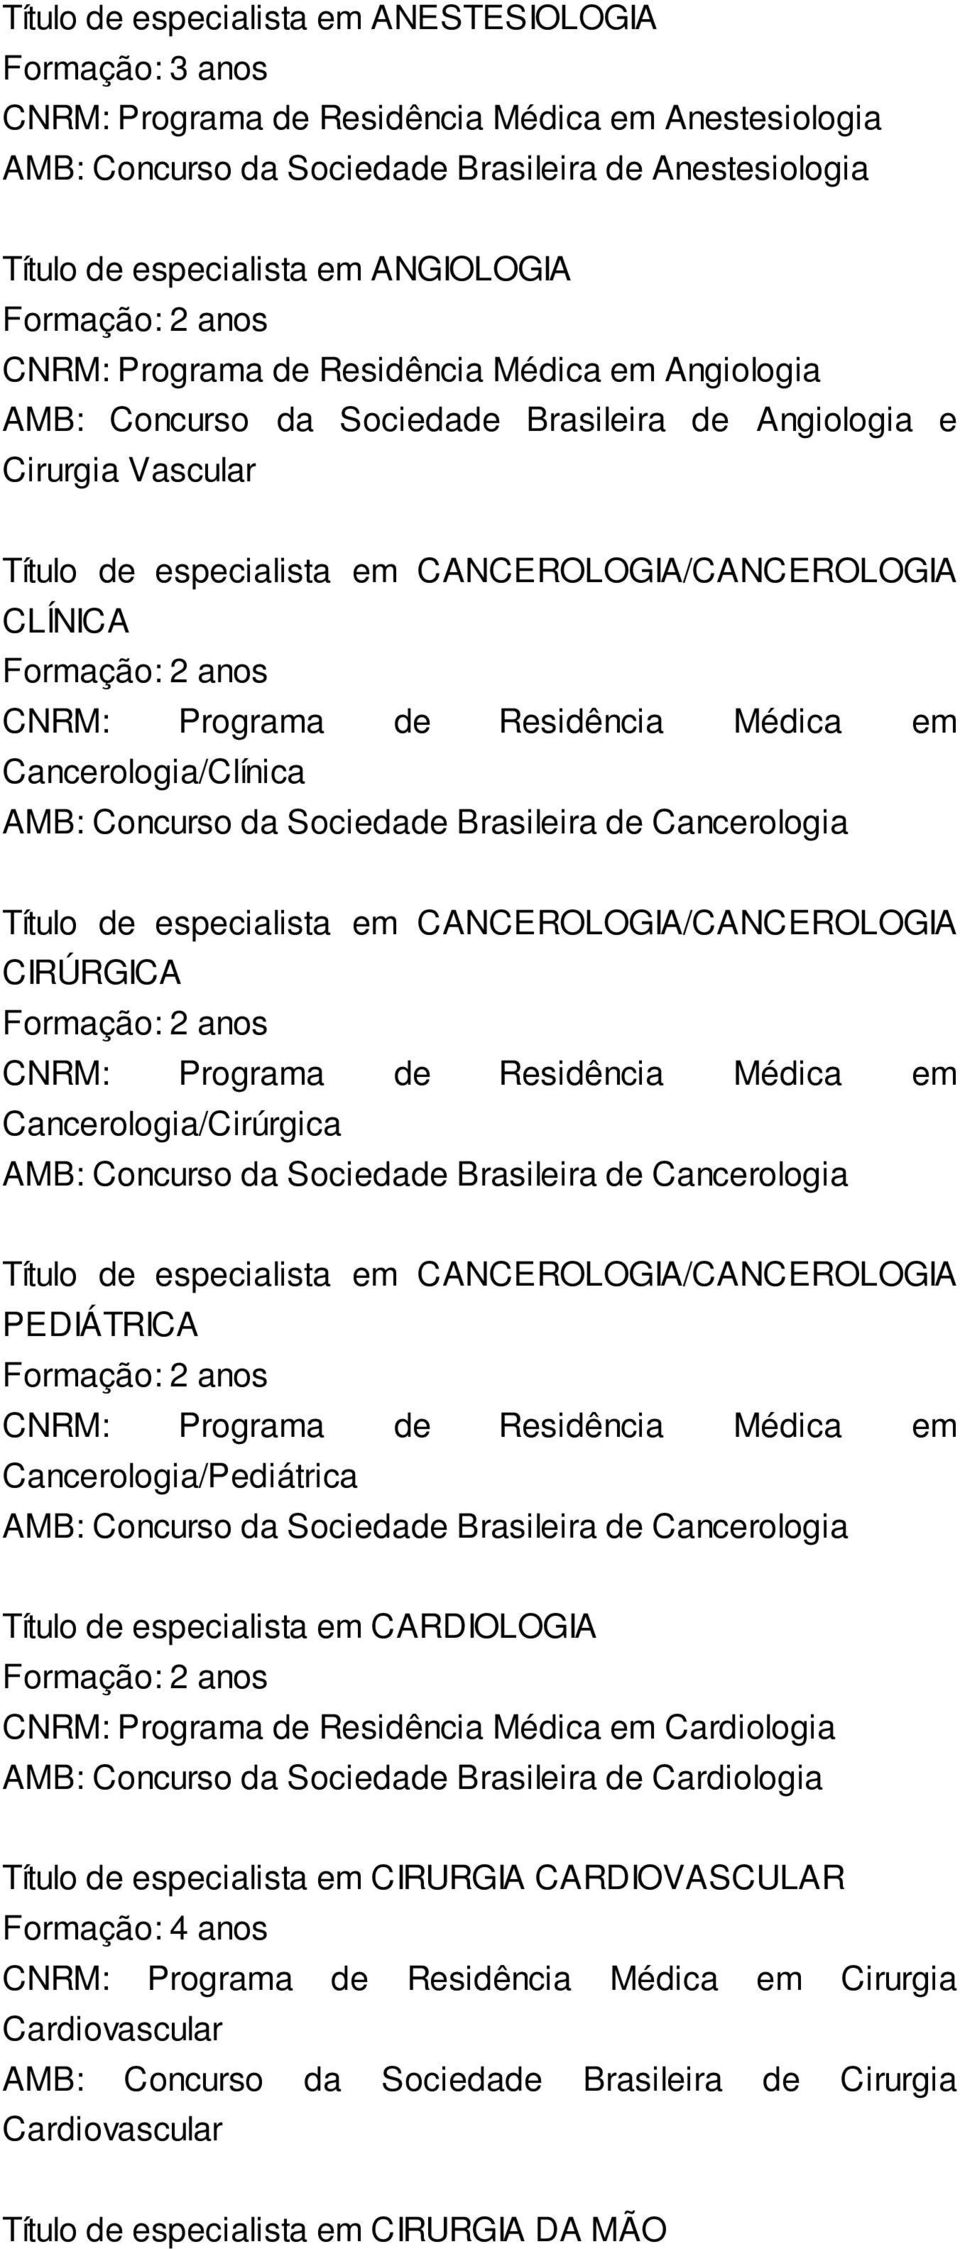 Residência Médica em Cancerologia/Clínica AMB: Concurso da Sociedade Brasileira de Cancerologia Título de especialista em CANCEROLOGIA/CANCEROLOGIA CIRÚRGICA CNRM: Programa de Residência Médica em